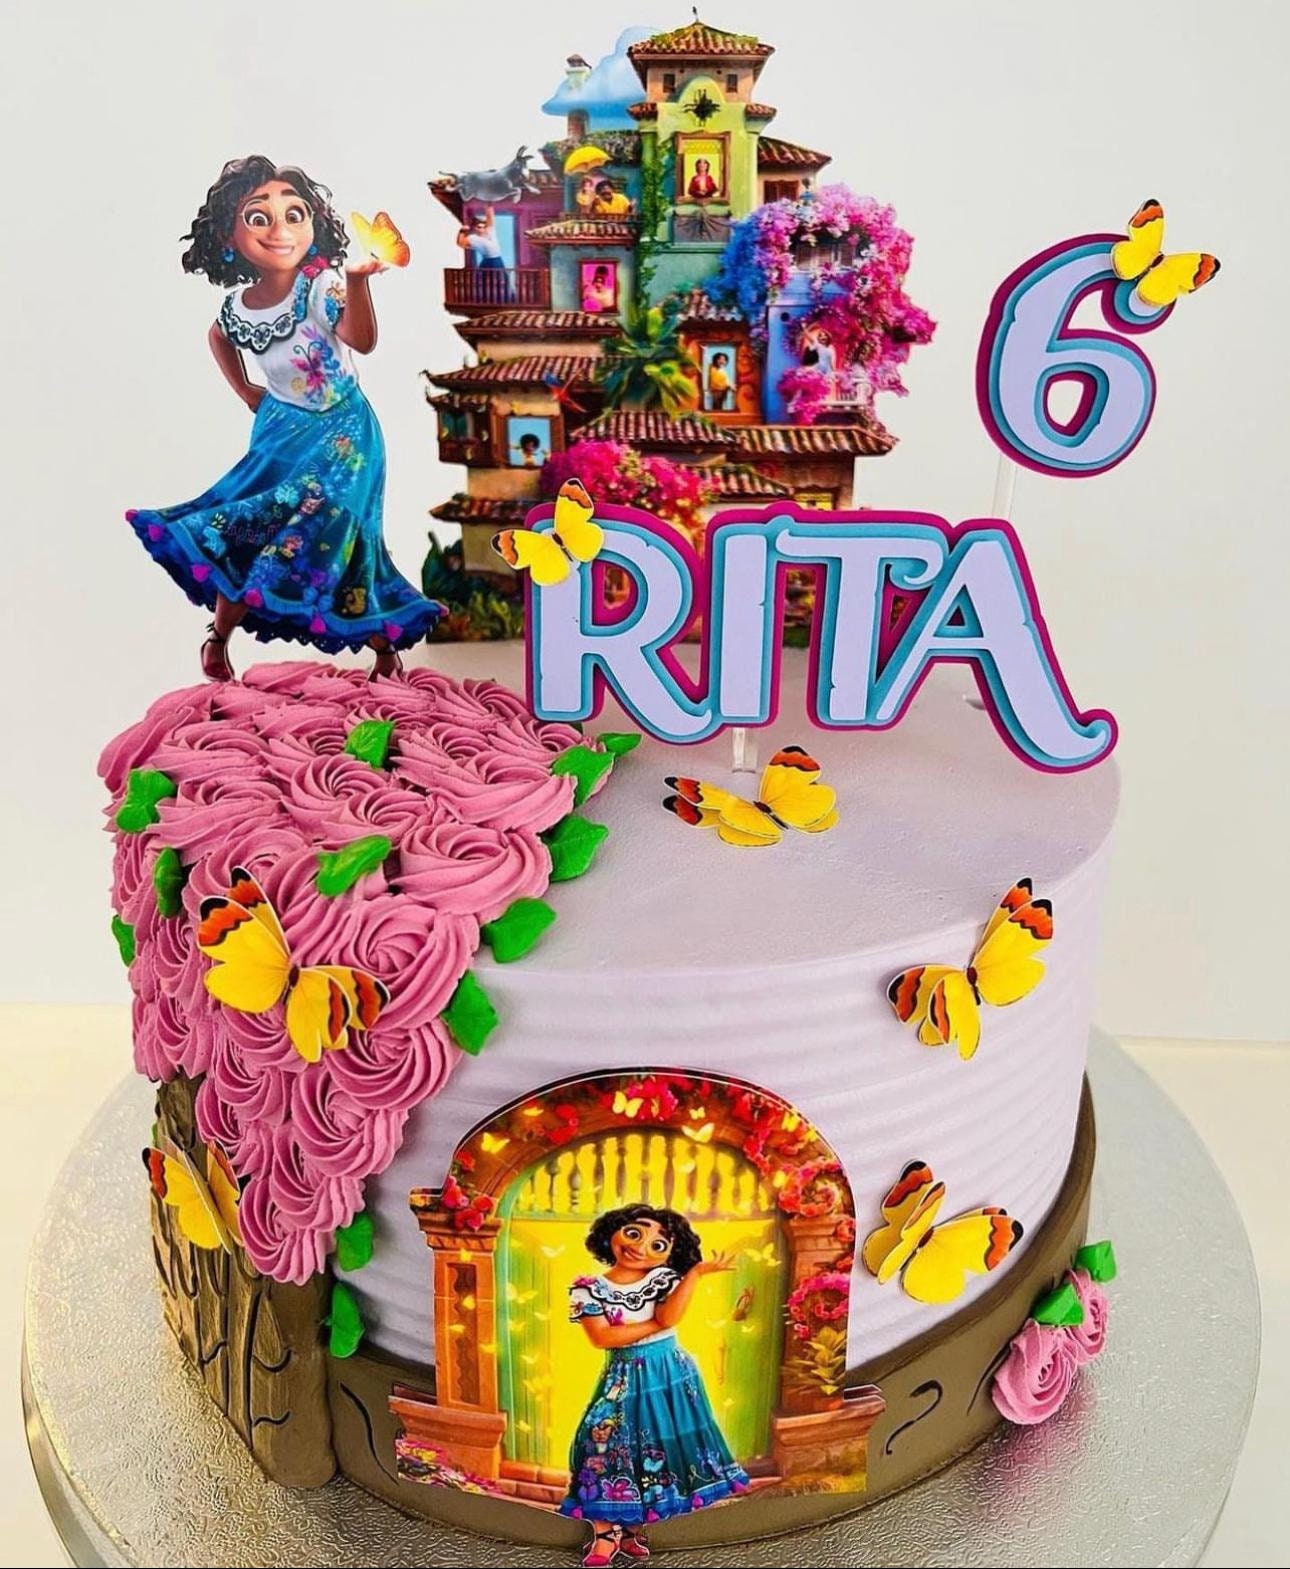 Encanto Themed Cake Topper — Design Sisters LV